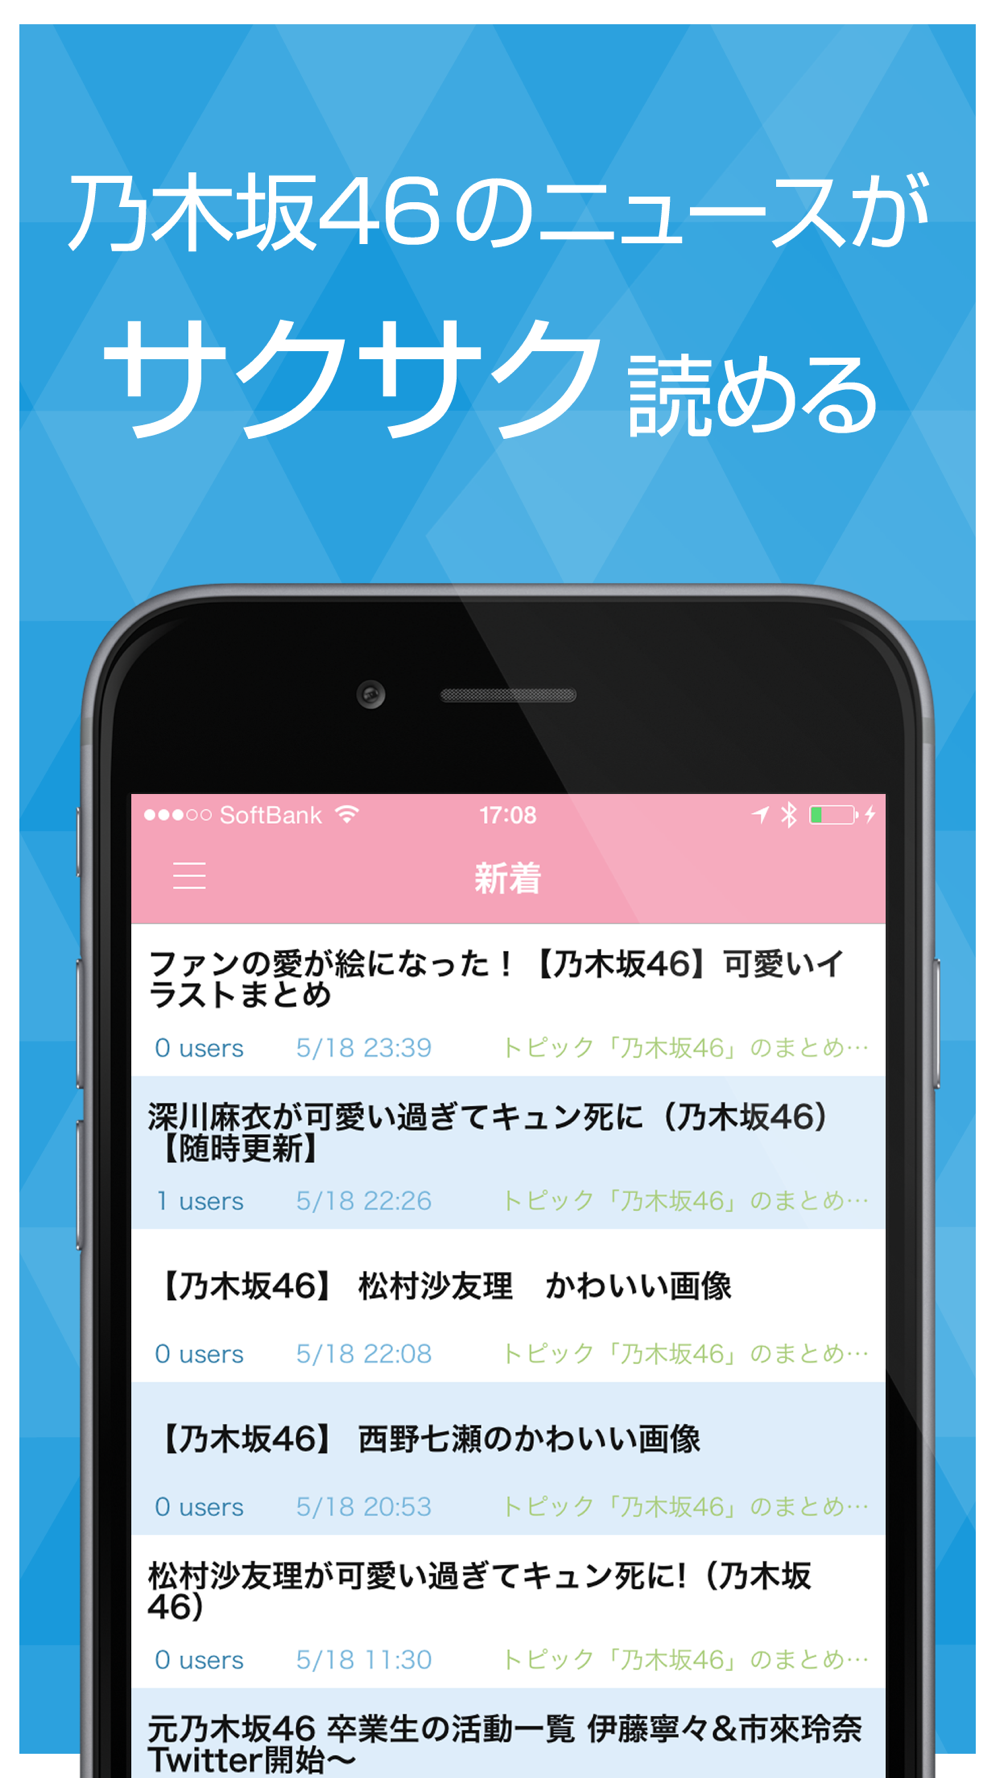 ニュースまとめ速報 For 乃木坂46 Free Download App For Iphone Steprimo Com